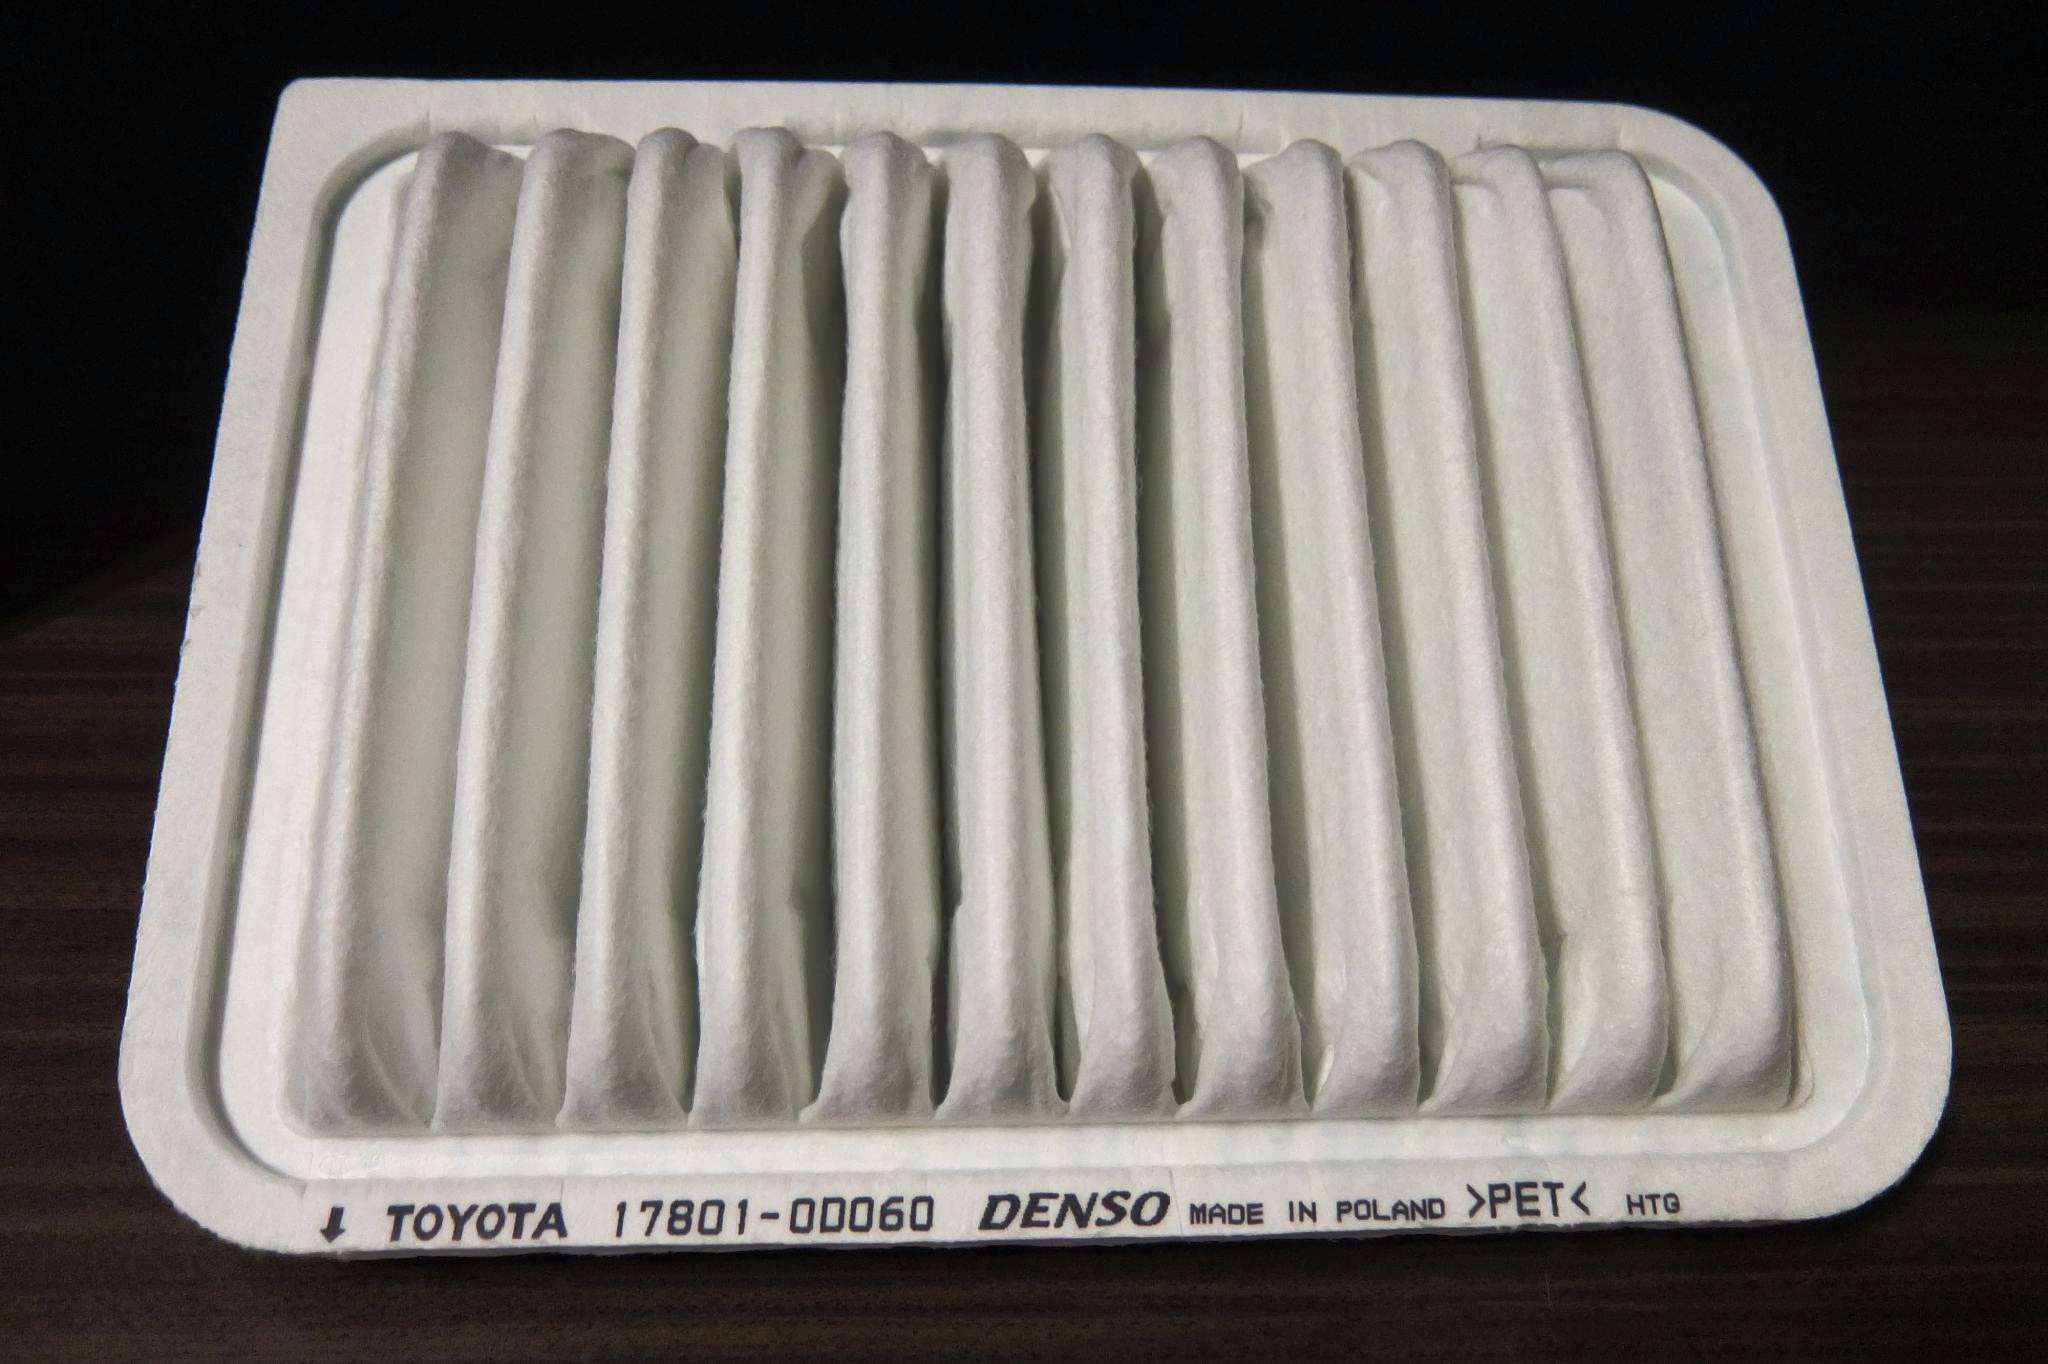 Фильтр двигателя воздушный тойота. 178010d060 Toyota фильтр воздушный. Toyota 17801-0d060. 17801-0t060.